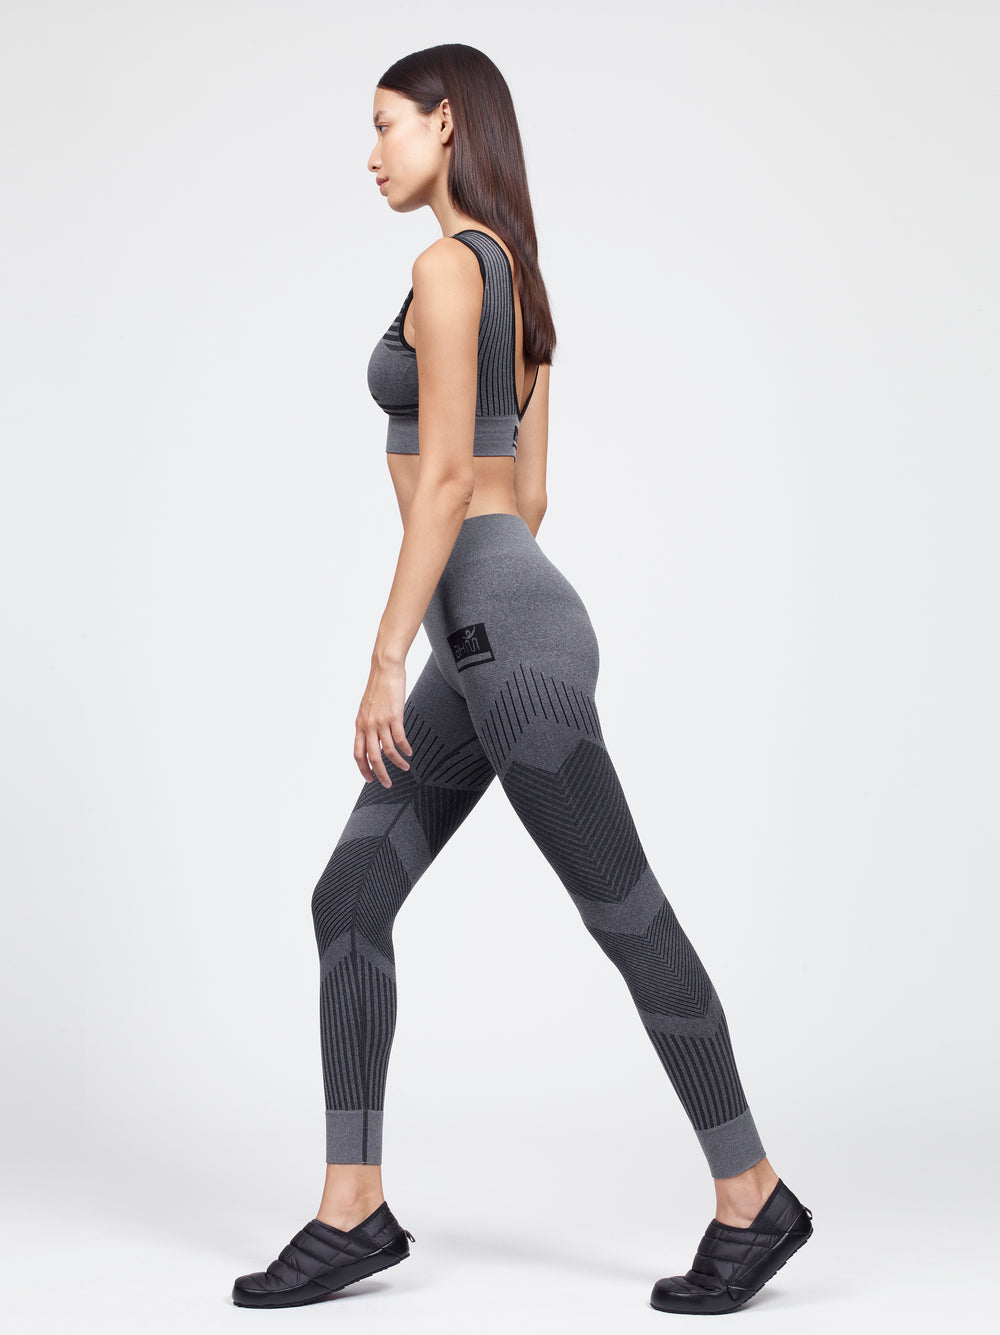 bare back sport bra with flow legging set gray black